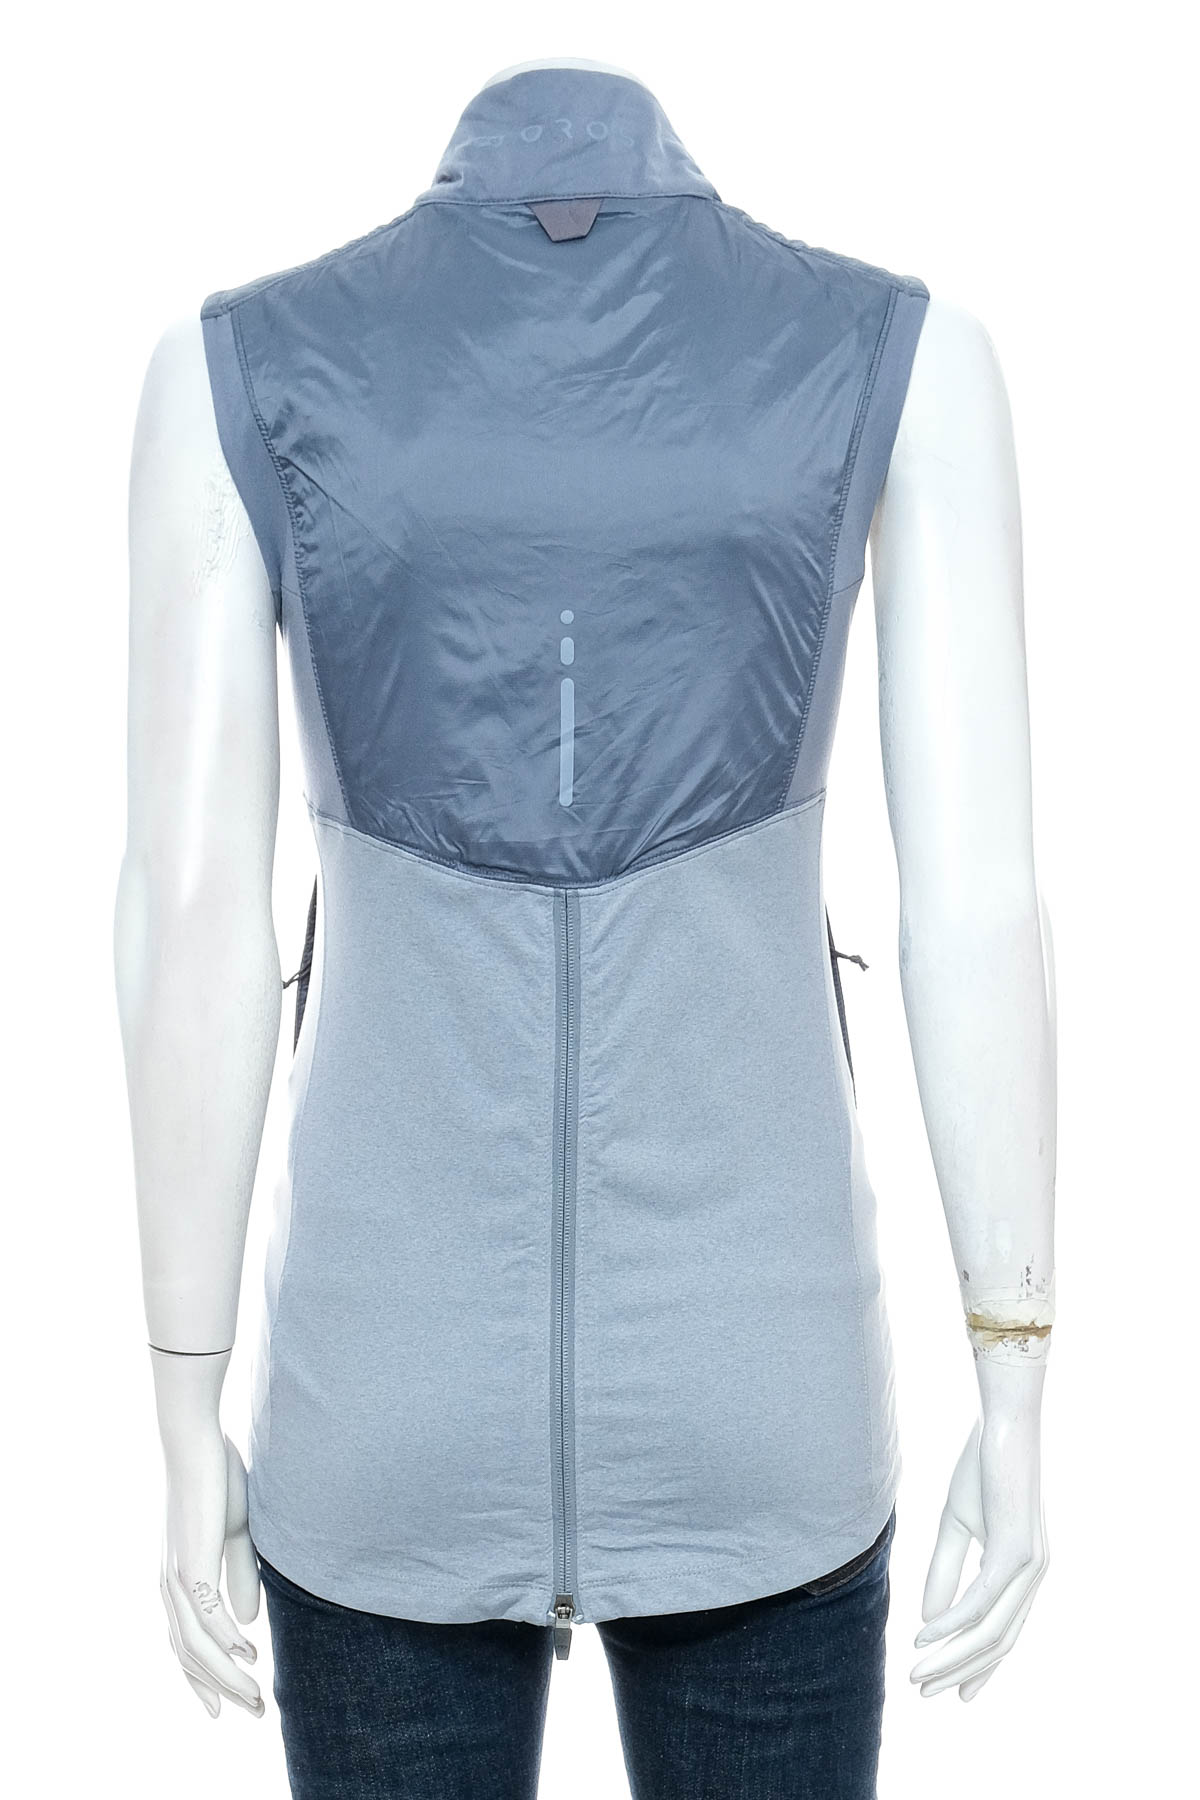 Women's vest - OROS - 1